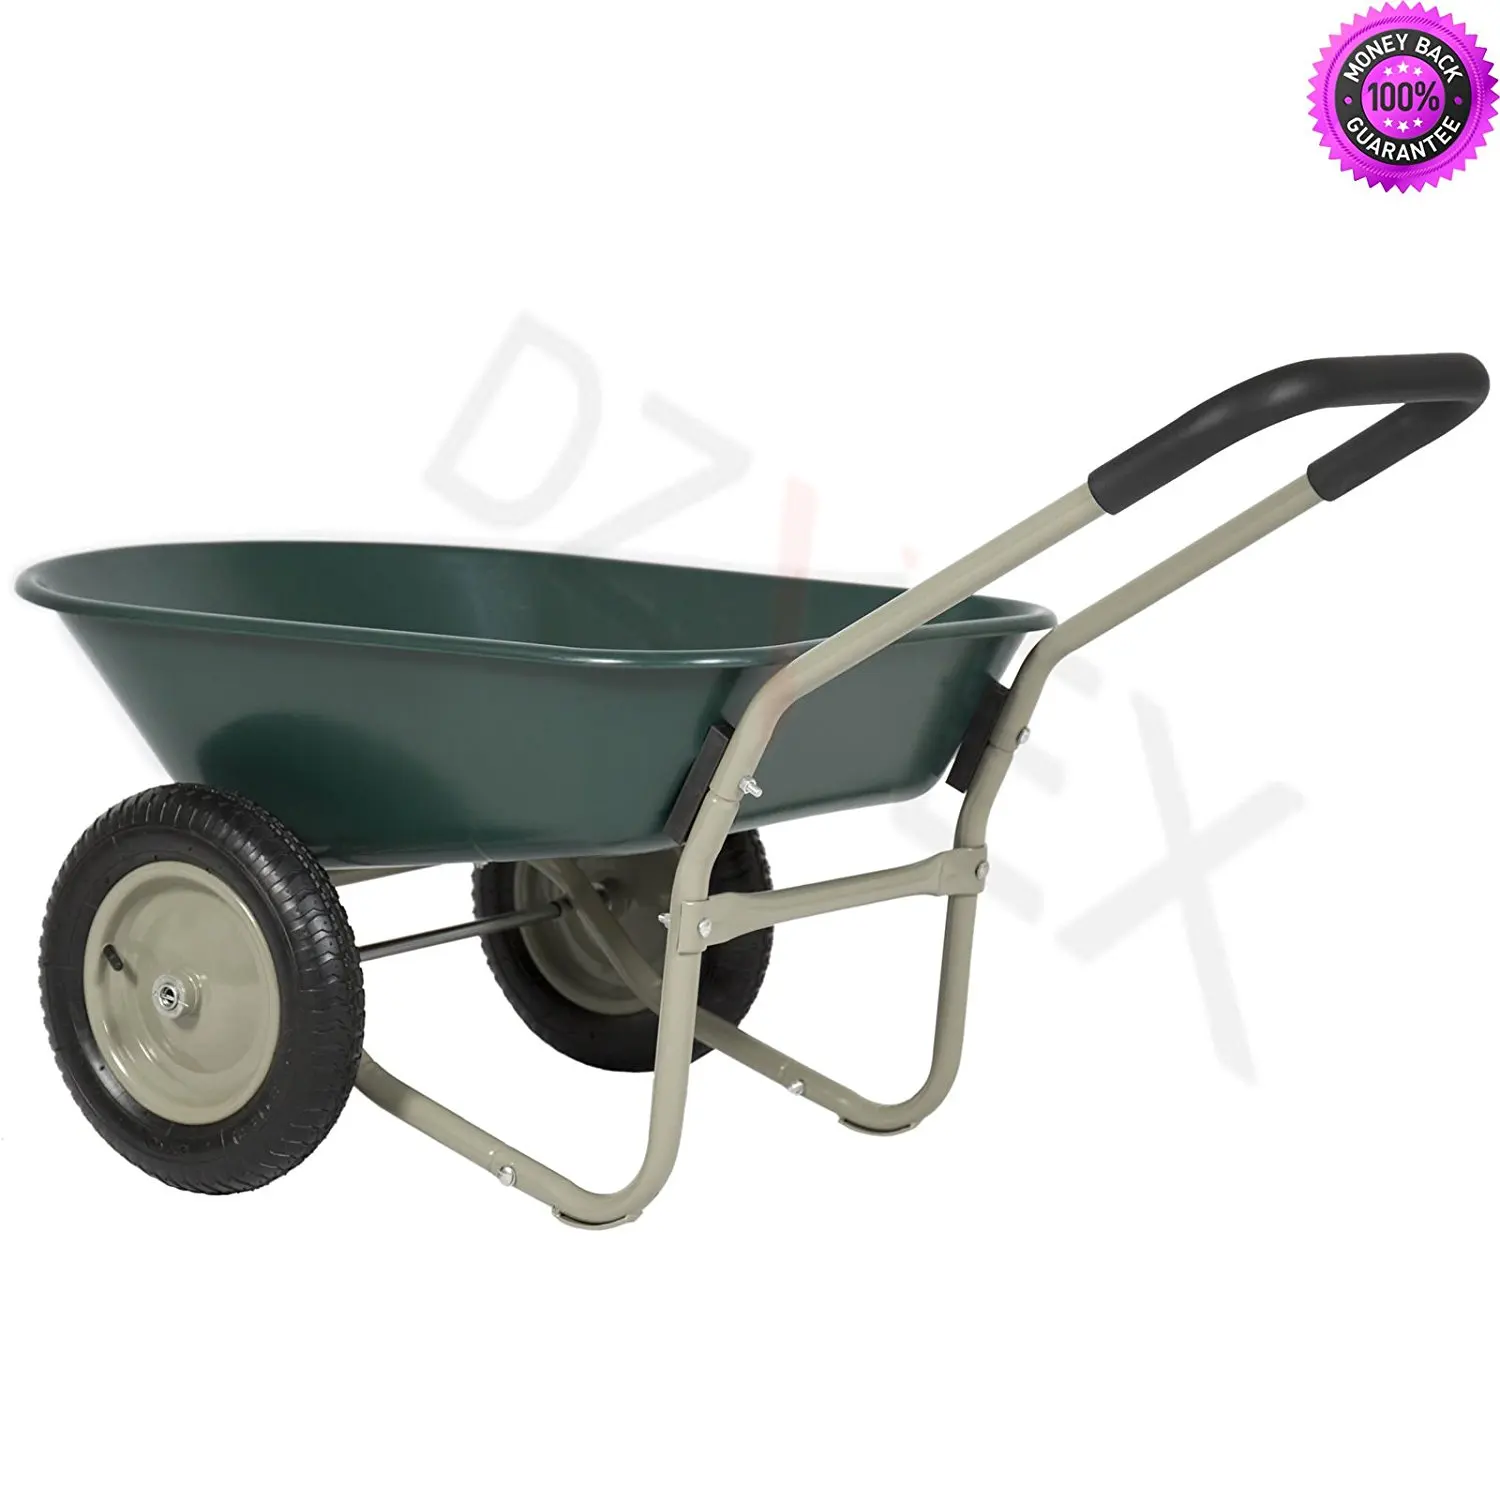 Cheap Wheelbarrow Cart Find Wheelbarrow Cart Deals On Line At